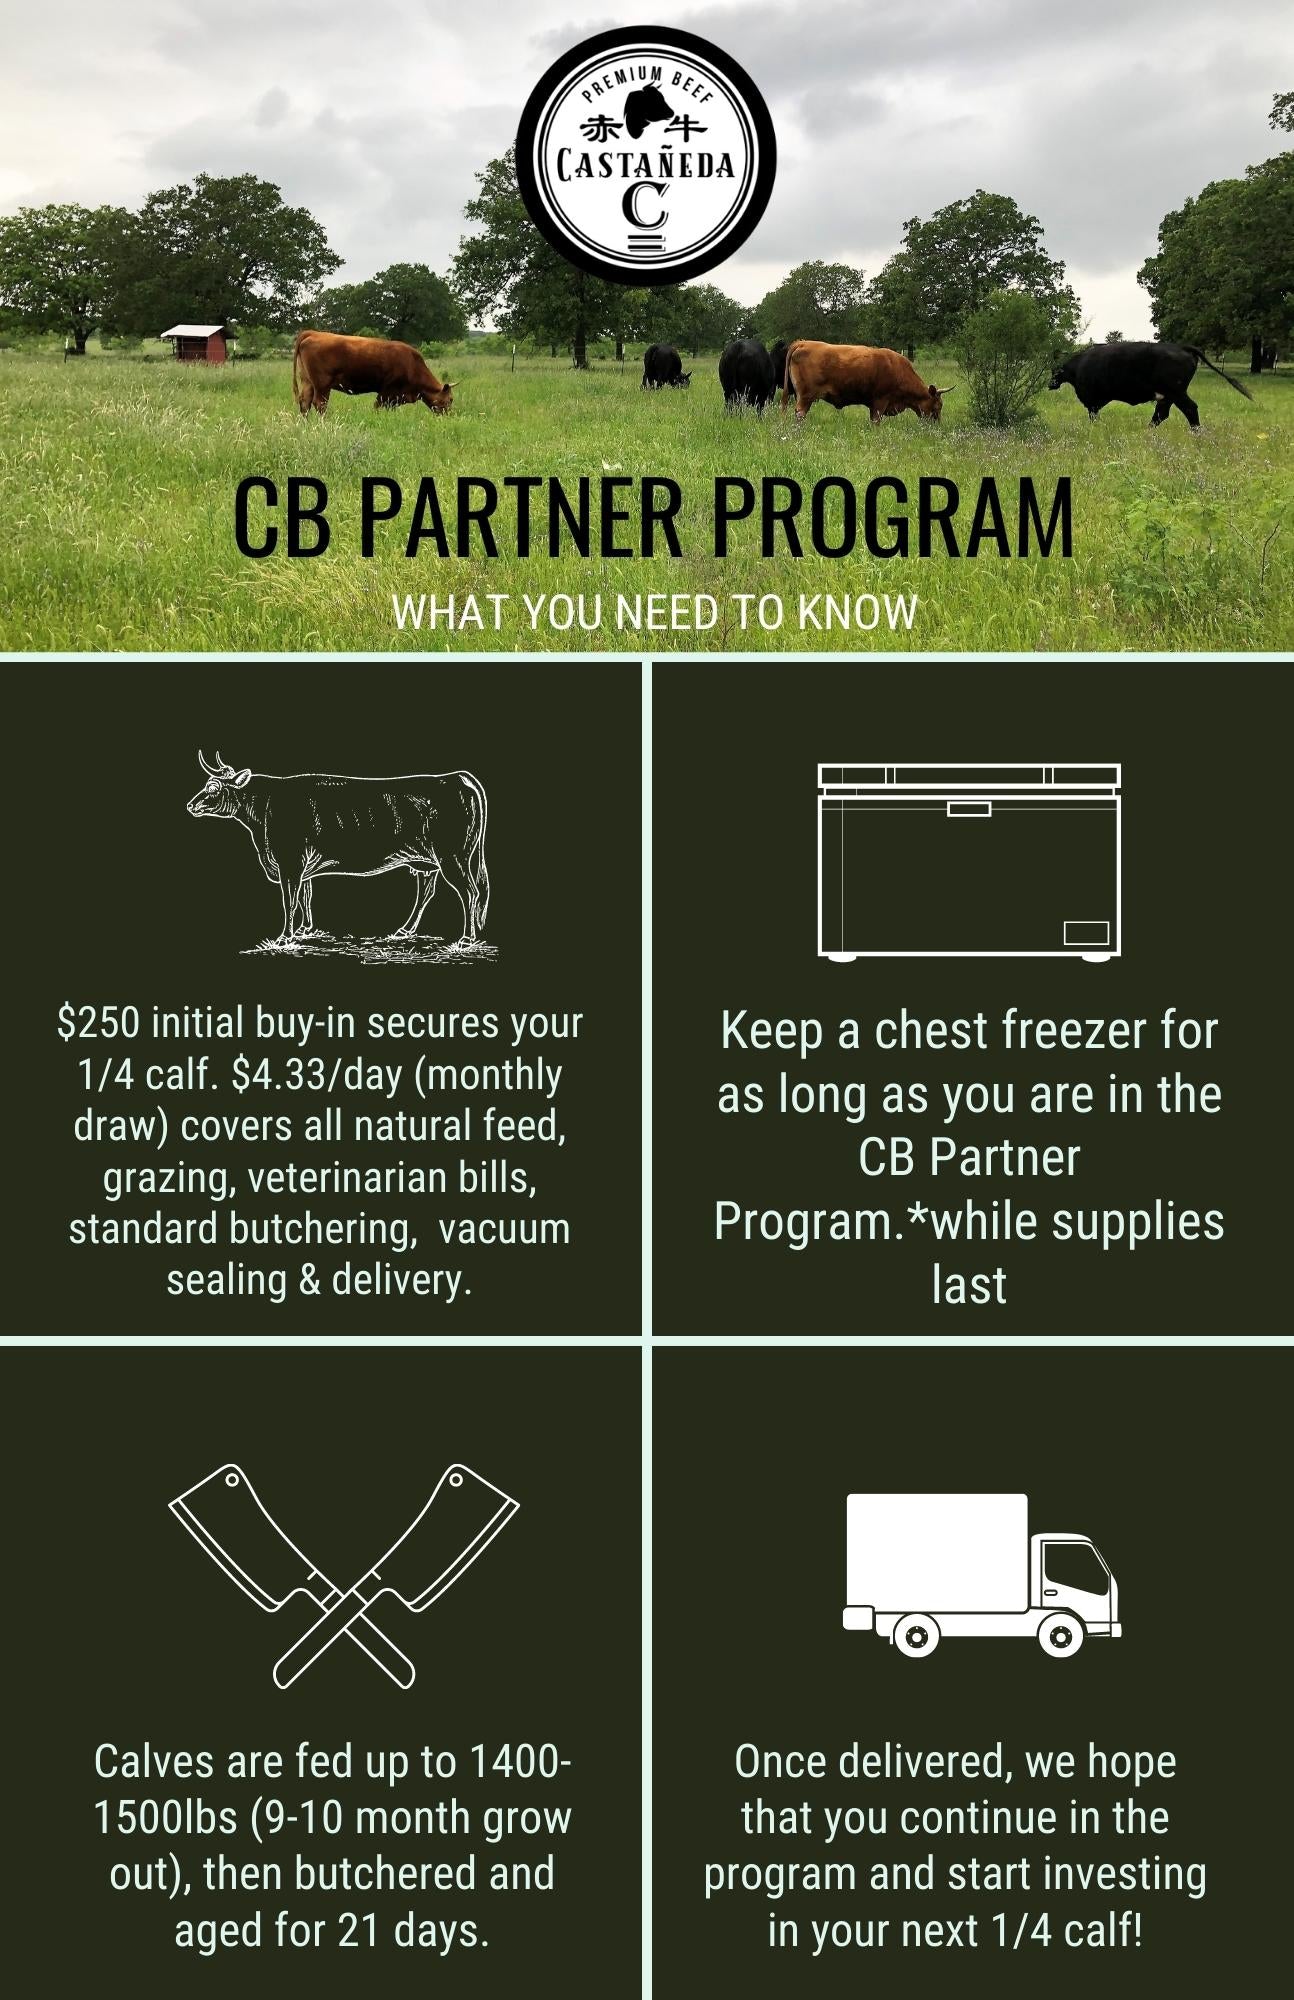 CB Partner Program (1/4 Beef)